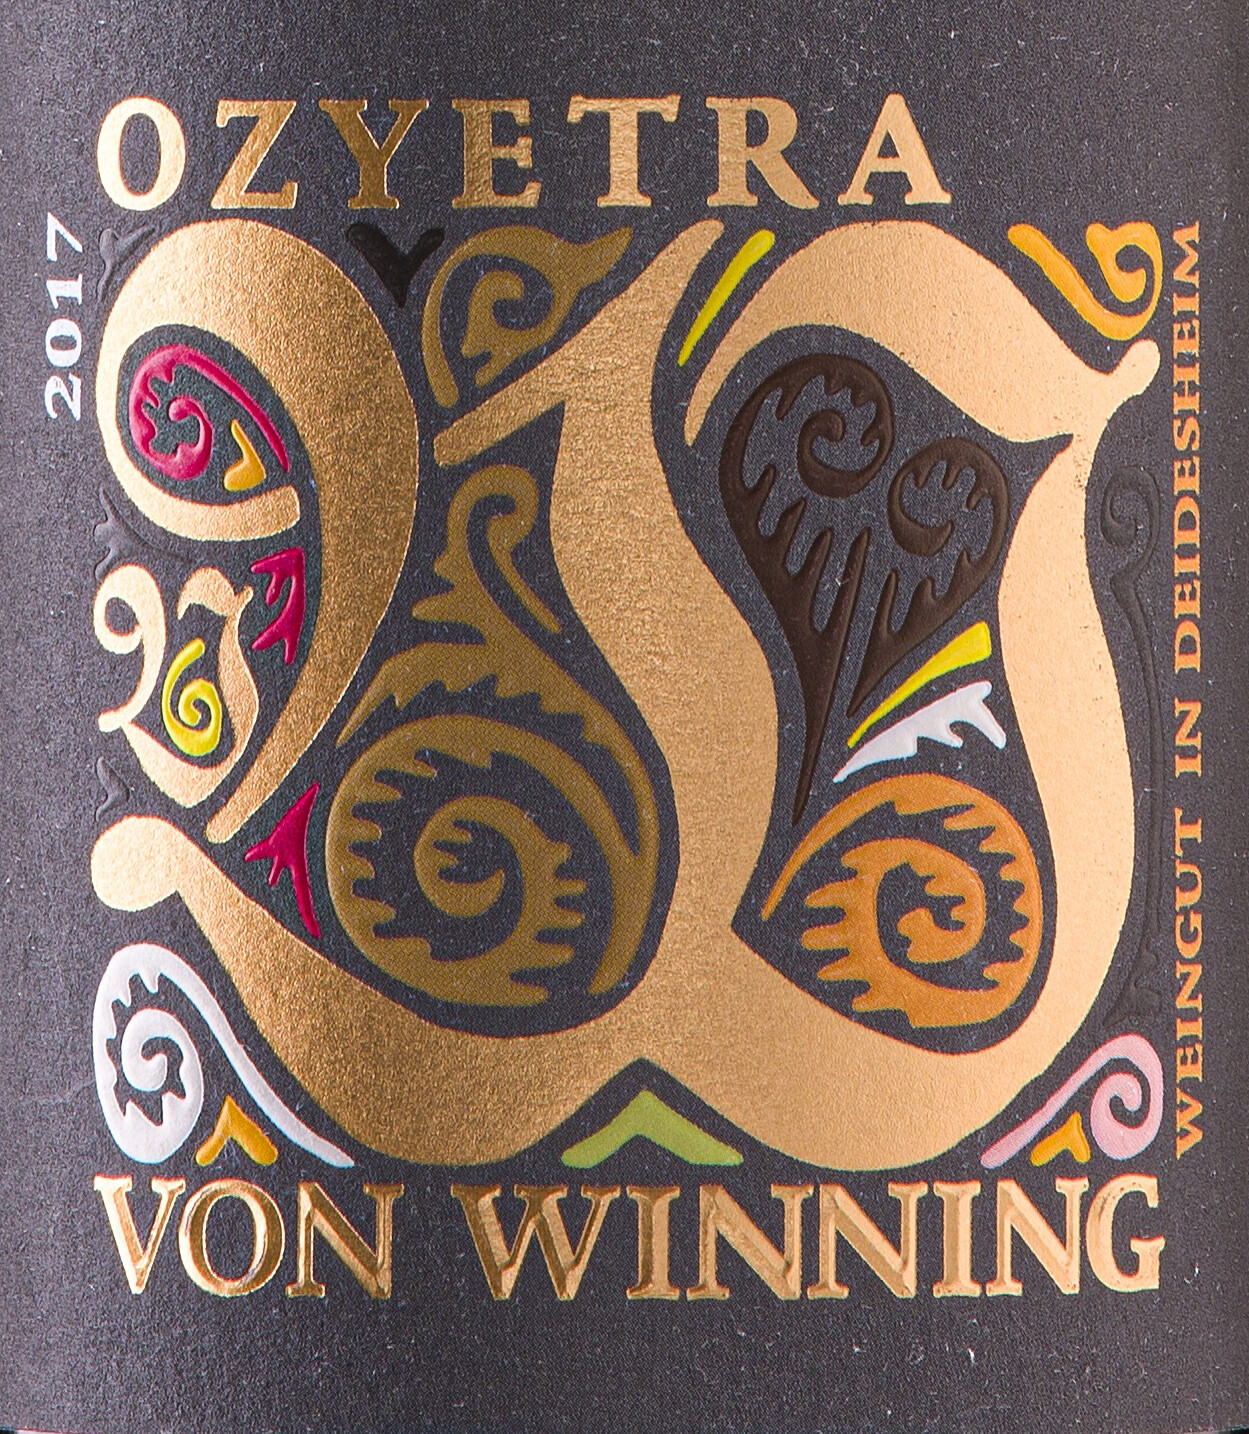 Von Winning 2019 Ozyetra Riesling